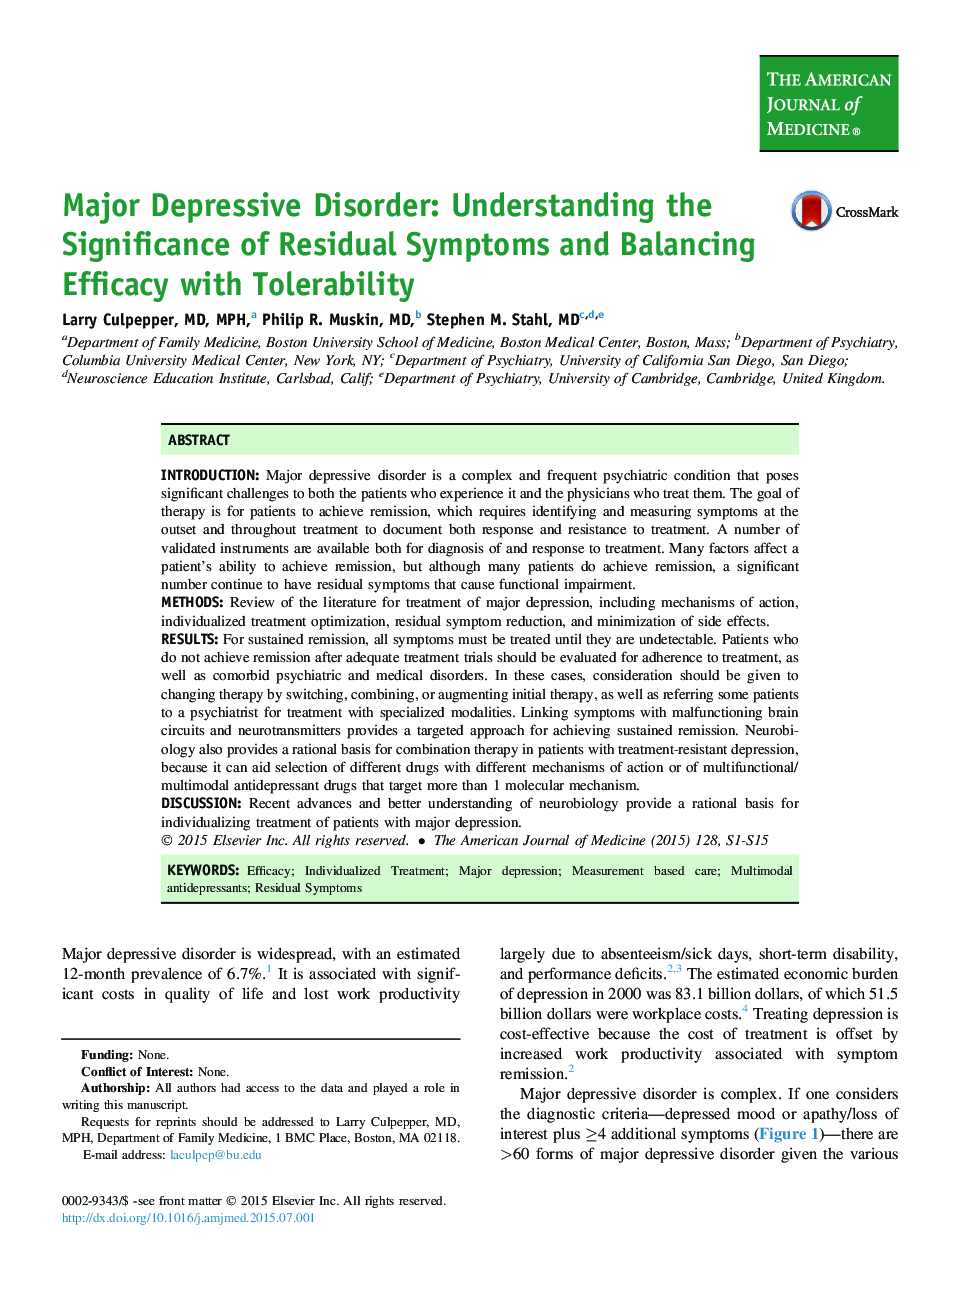 اختلال افسردگی عمده: درک اهمیت علائم باقی مانده و اثربخشی متوازن با تحمل